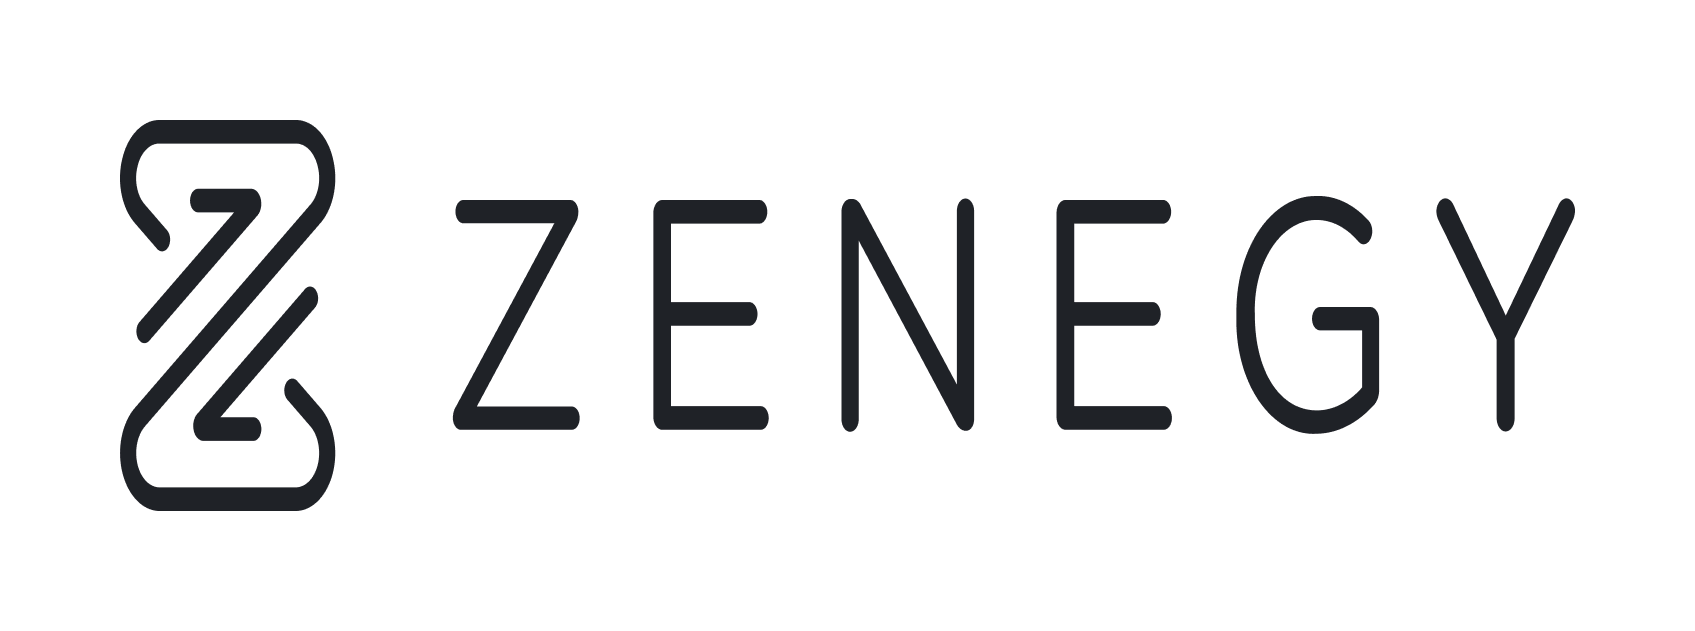 Zenegy - Logo (colored)